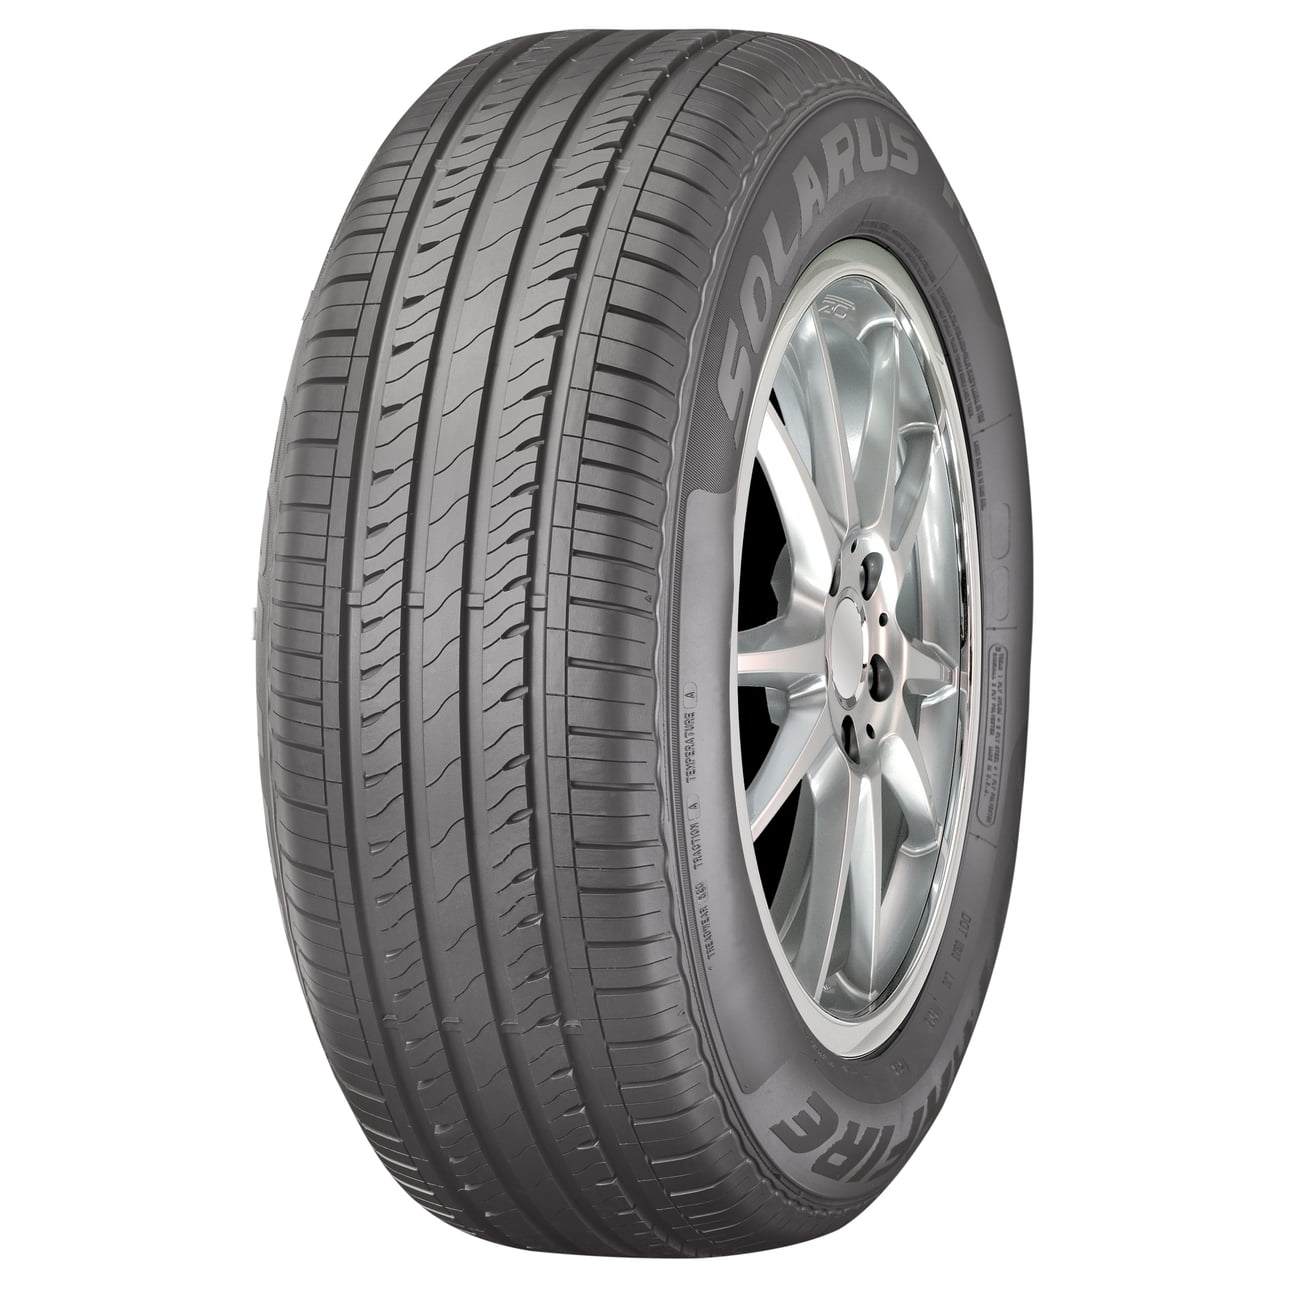 Dunlop Winter Maxx Winter 225/65R17 102R Passenger Tire